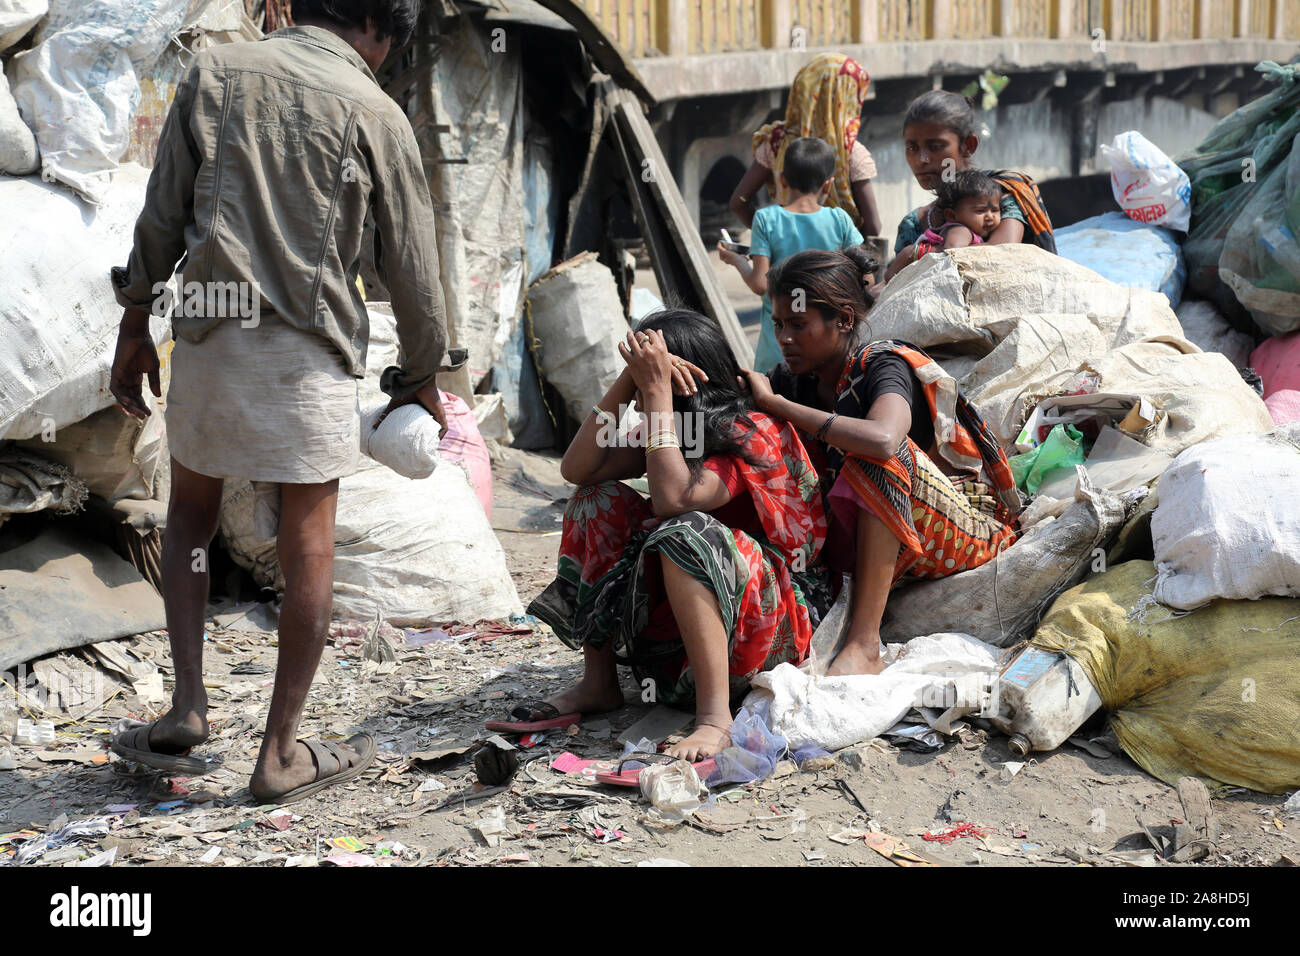 Ghetto and slums in Kolkata India Stock Photo